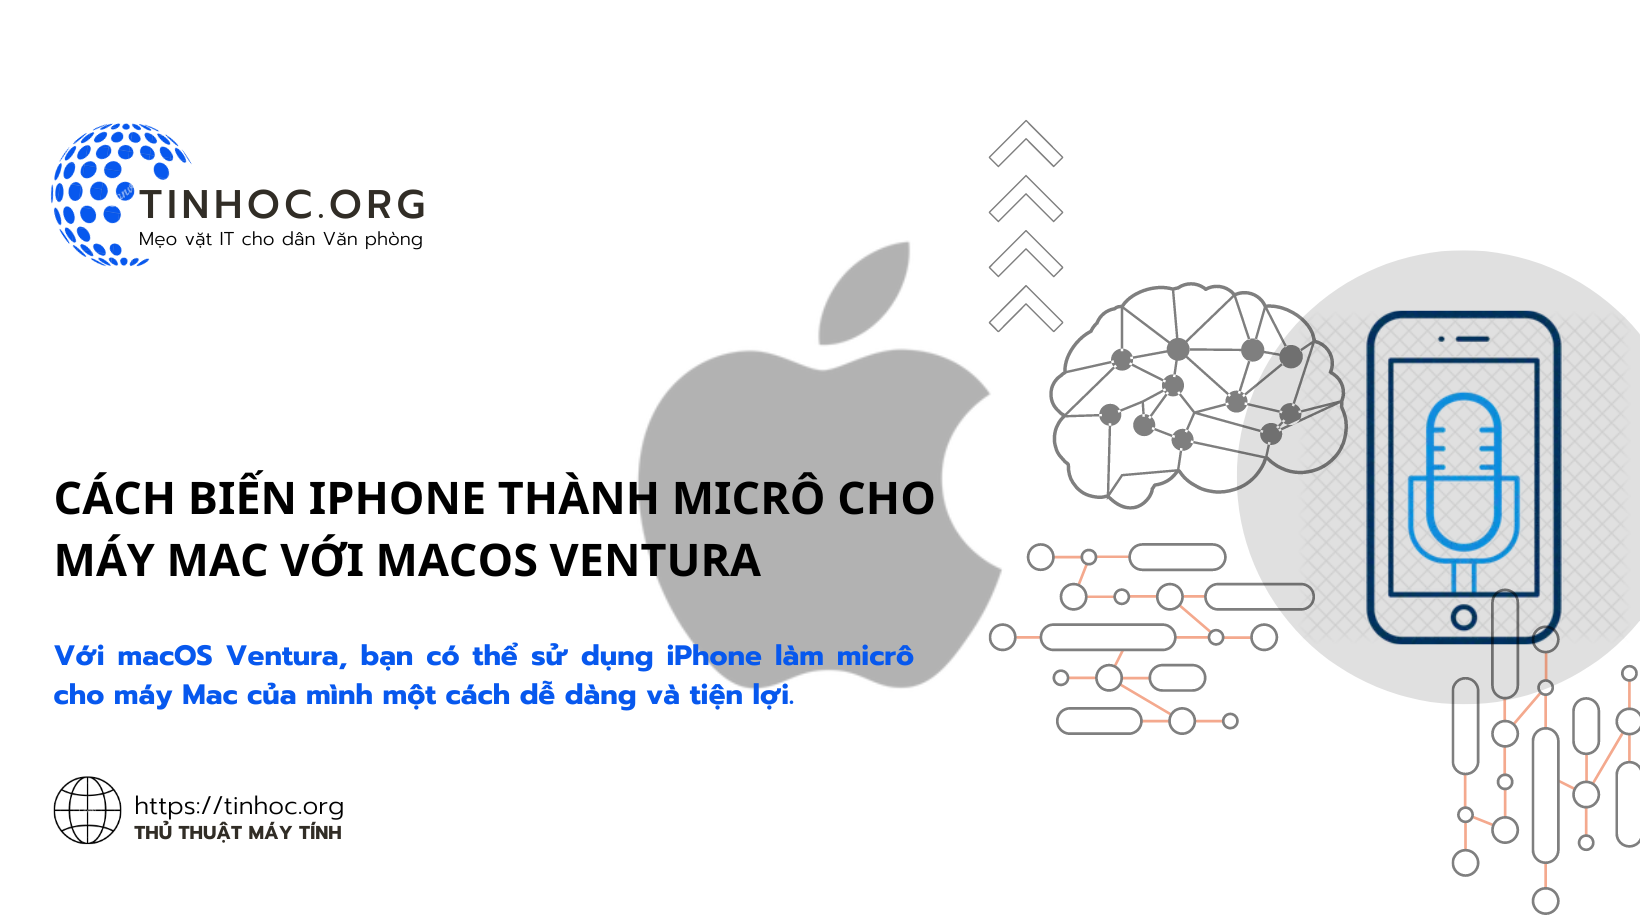 Cách biến iPhone thành micrô cho máy Mac với macOS Ventura